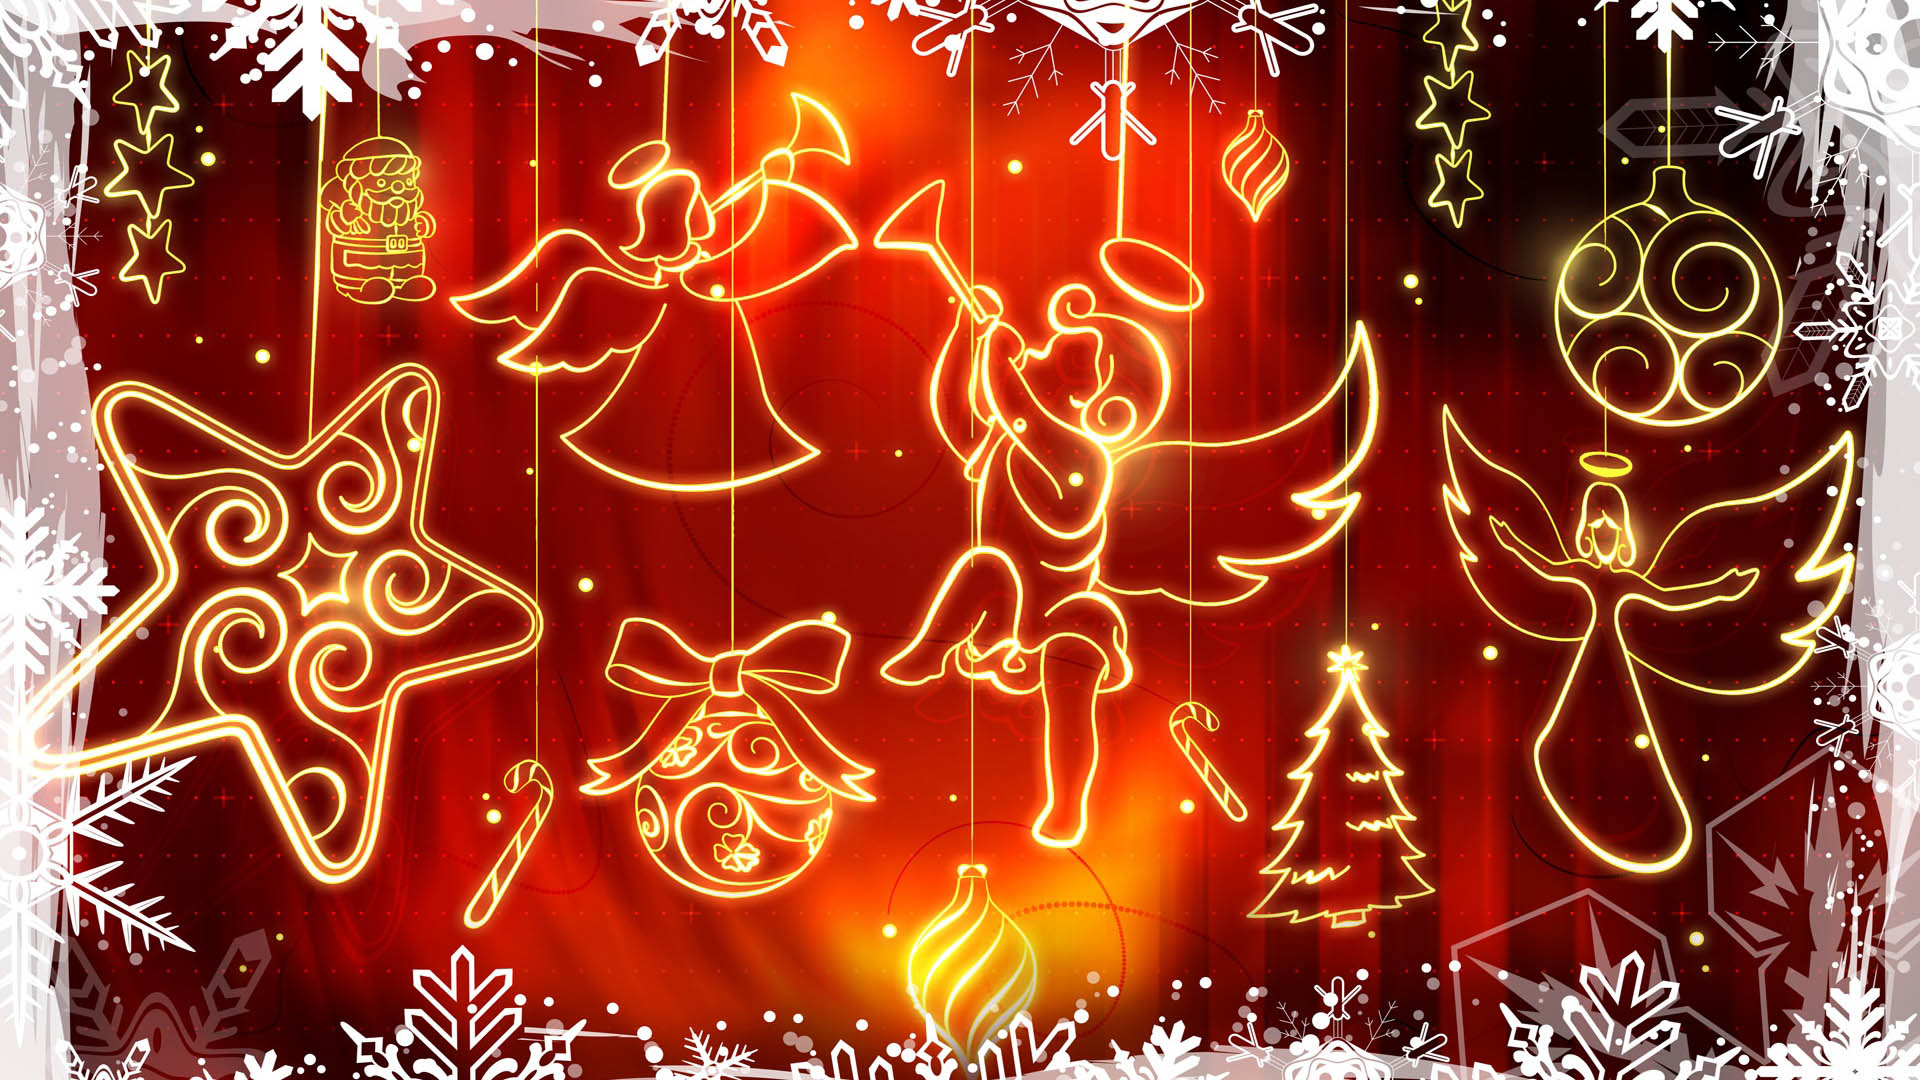 buon natale full hd wallpaper,rosso,decorazione natalizia,testo,ornamento di natale,f te